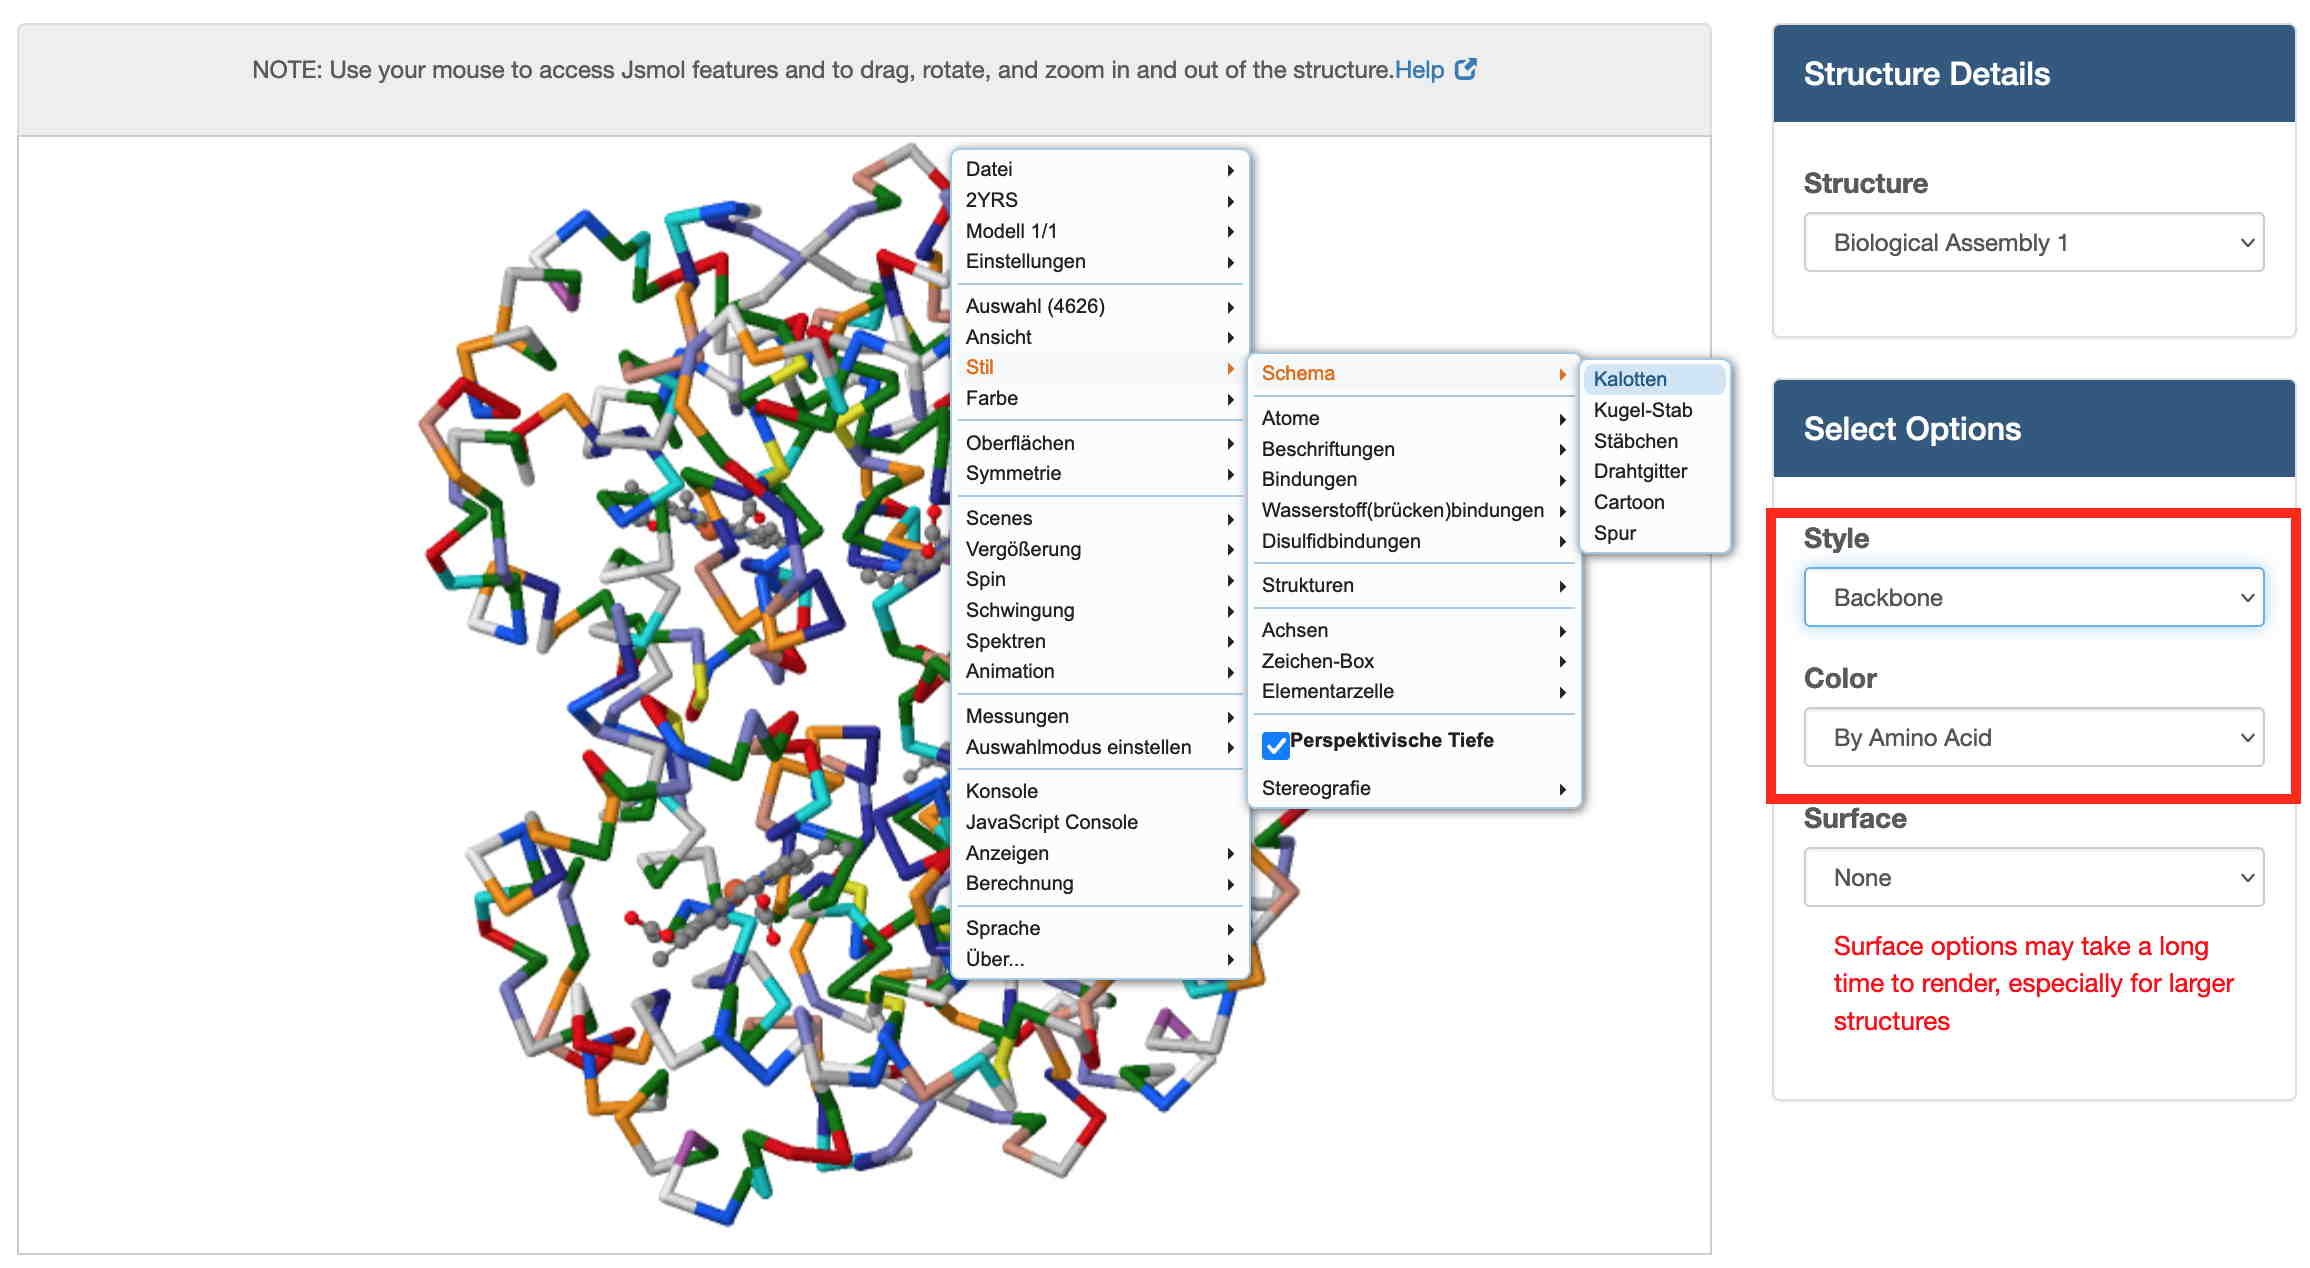 Benutzeroberfläche für die interaktive Animation zur Visualisierung des Proteins Hämoglobin in unterschiedlichen Darstellungsformen (rcsb).